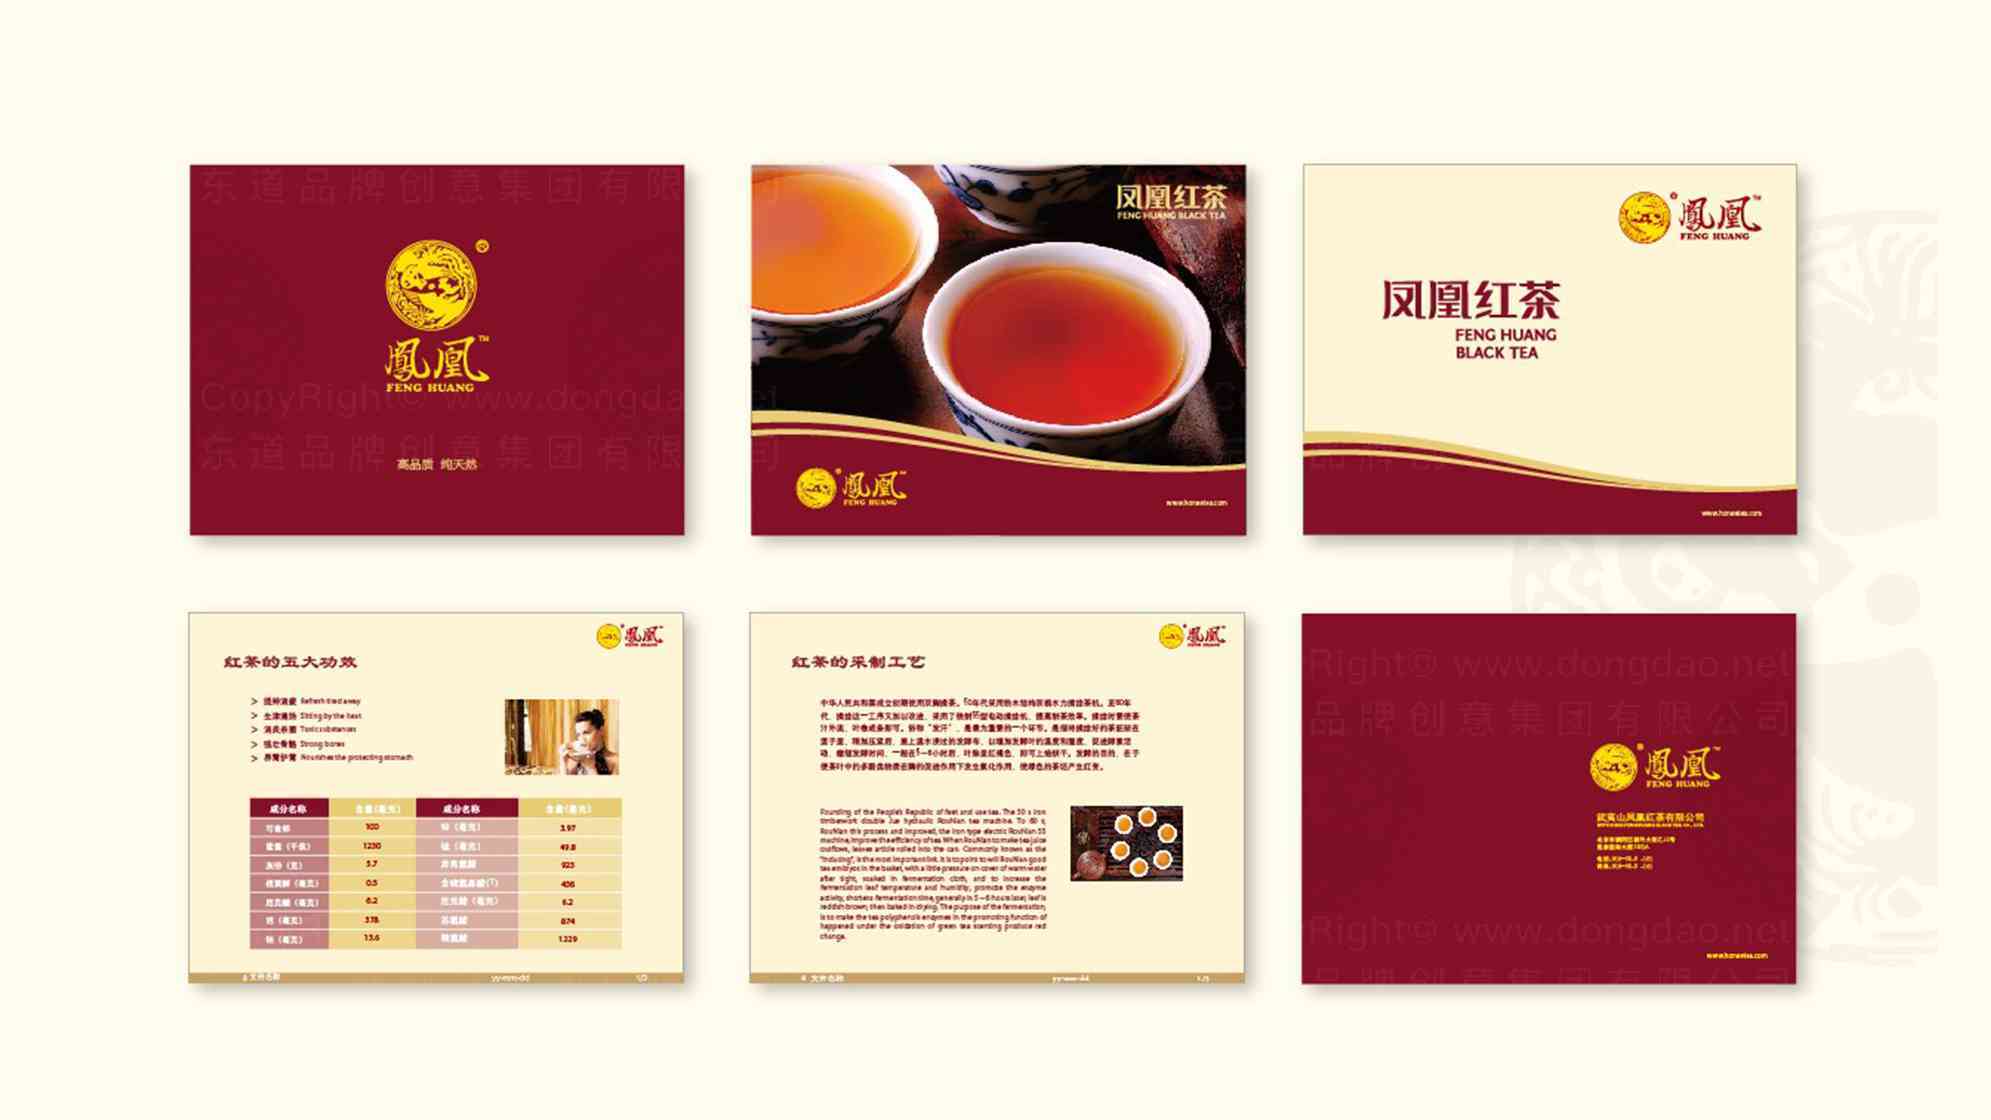 凤凰红茶茶叶logo设计图片素材_5